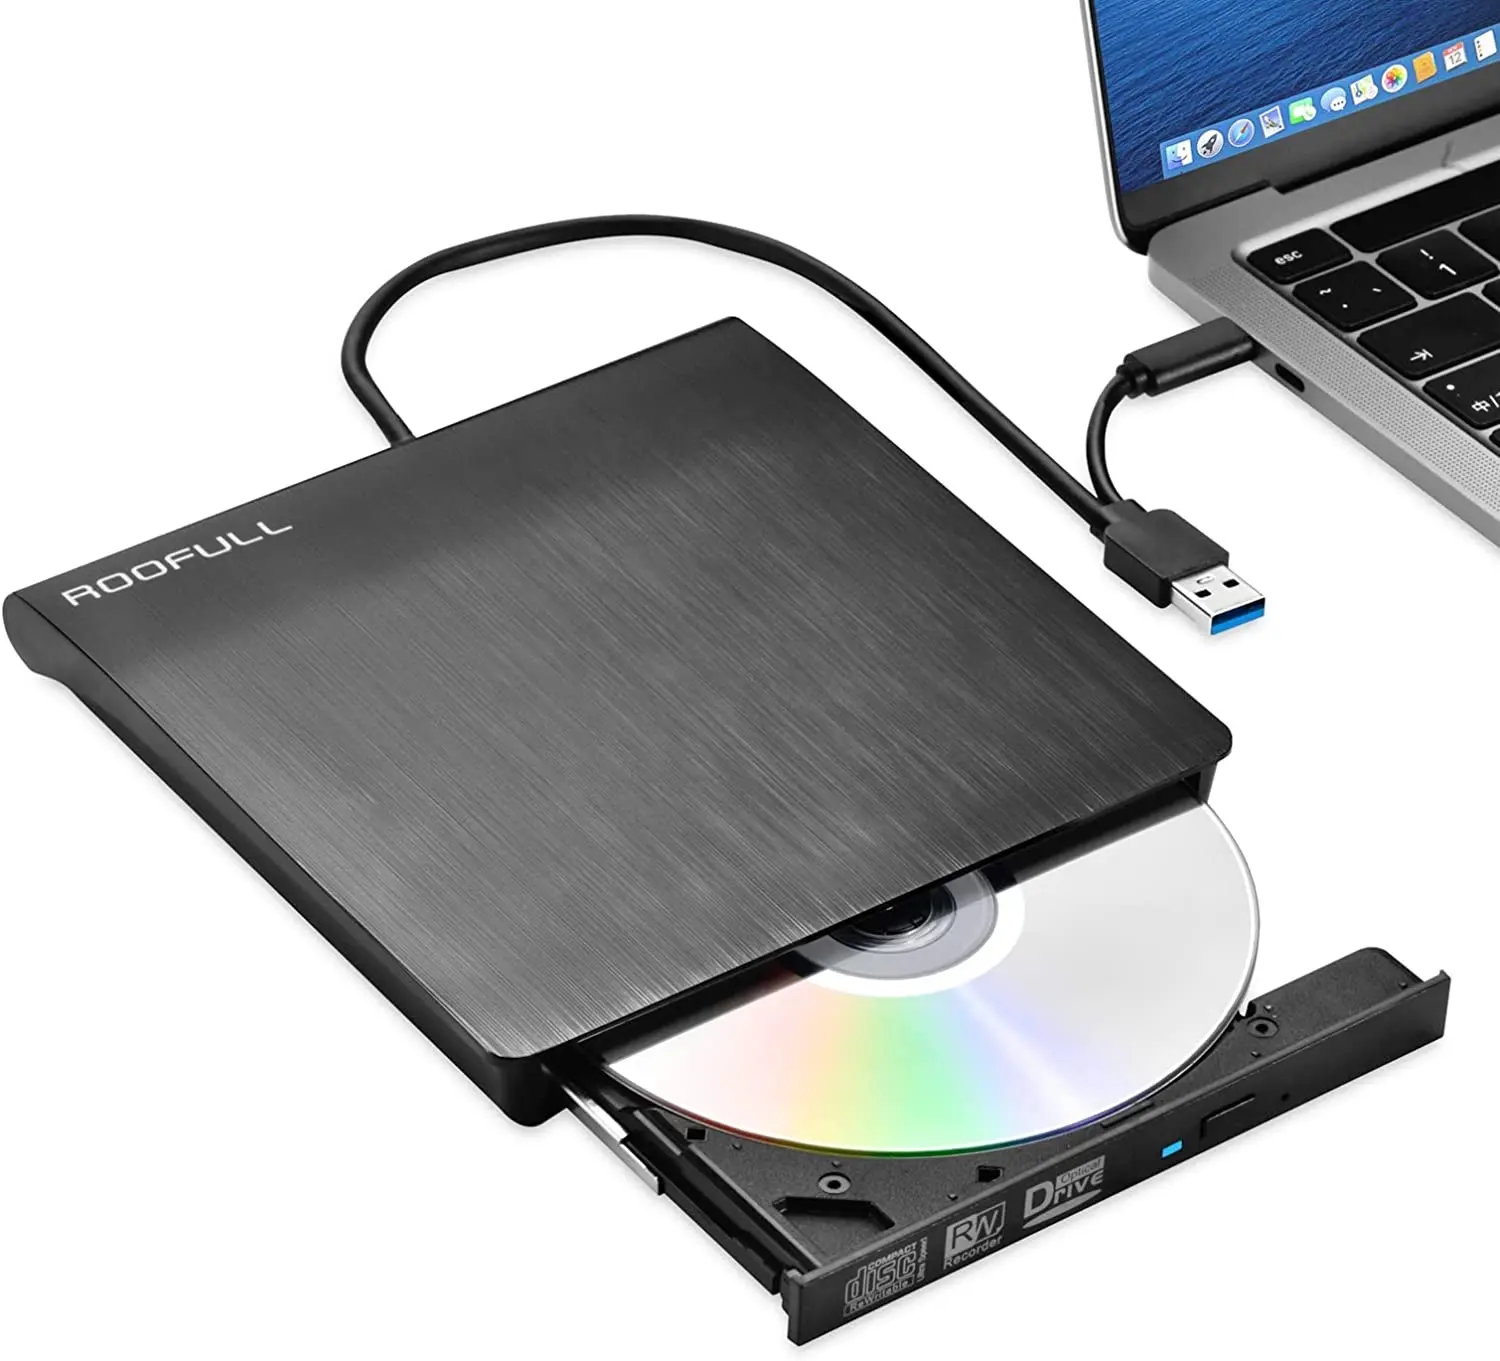 Externe CD DVD RW Laufwerk USB 3.0 USB-C Writer Brenner Player Reader für Laptop PC Hohe Qualität Heißer Verkauf Slim Color Box OEM Unterstützung